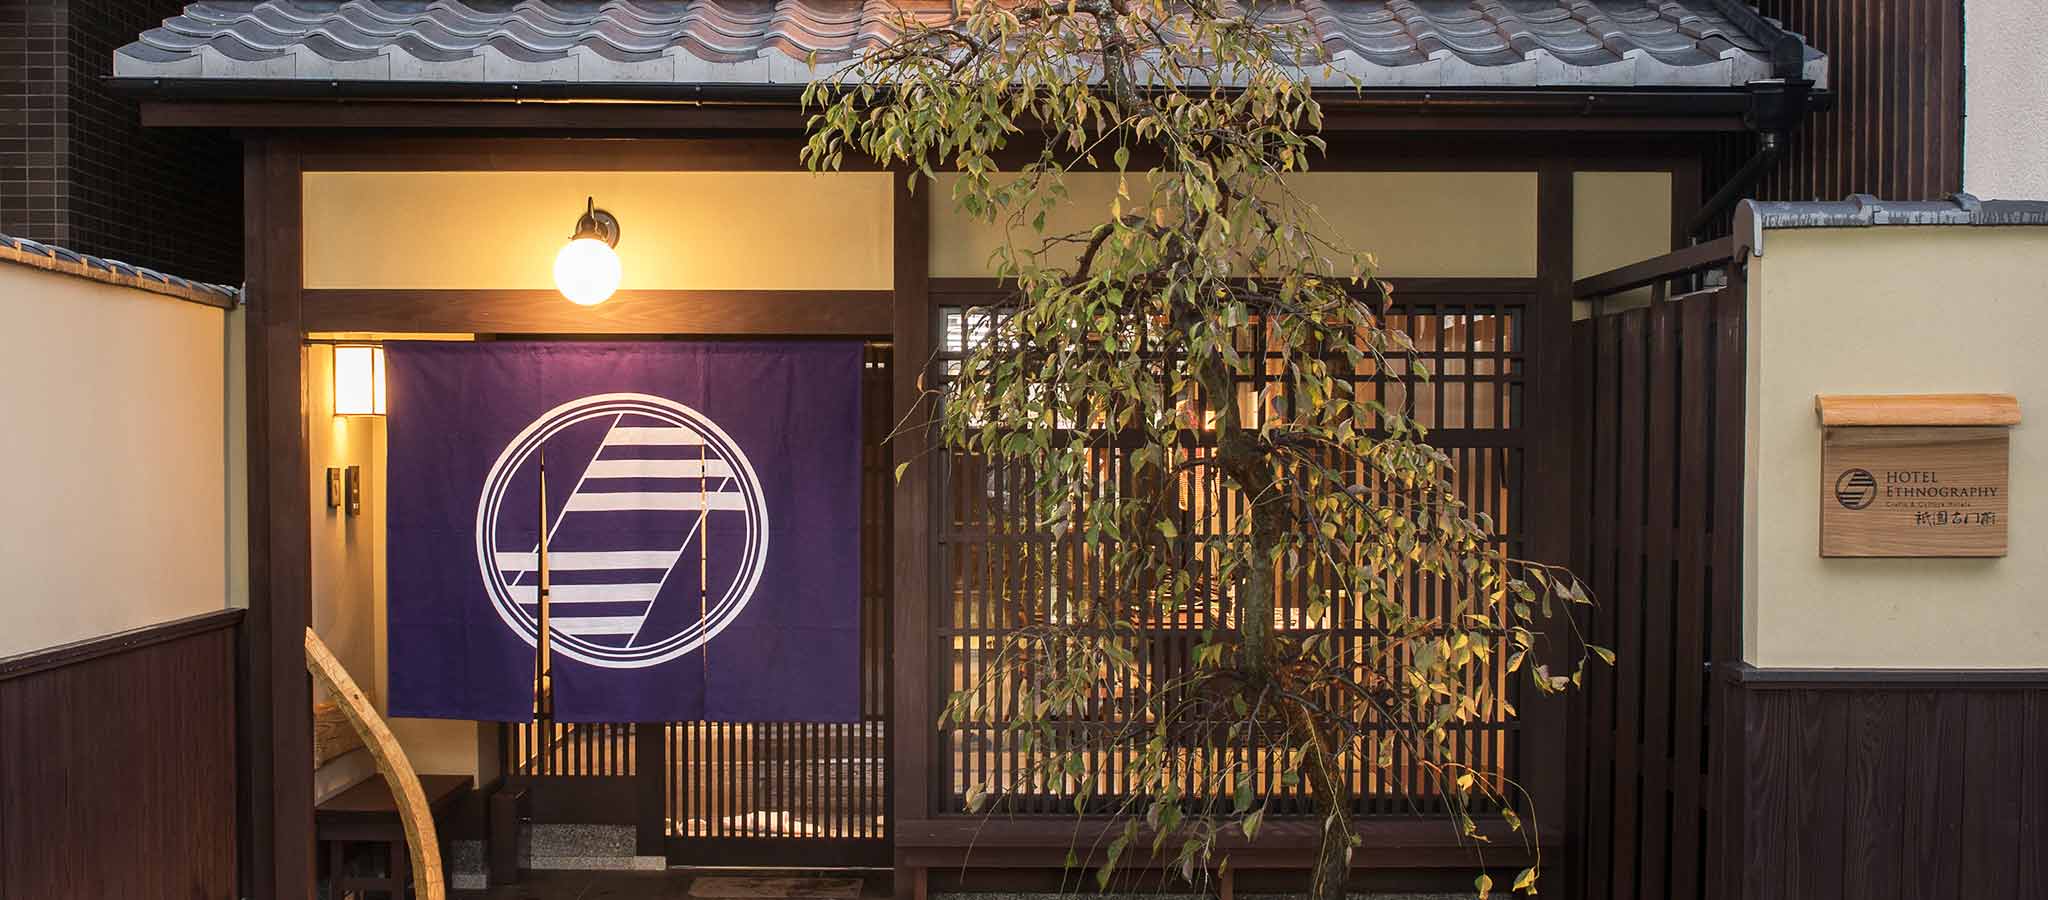 職人の技を随所に散りばめ、日本の美を細部に表現した寛ぎの空間 | REJ株式会社